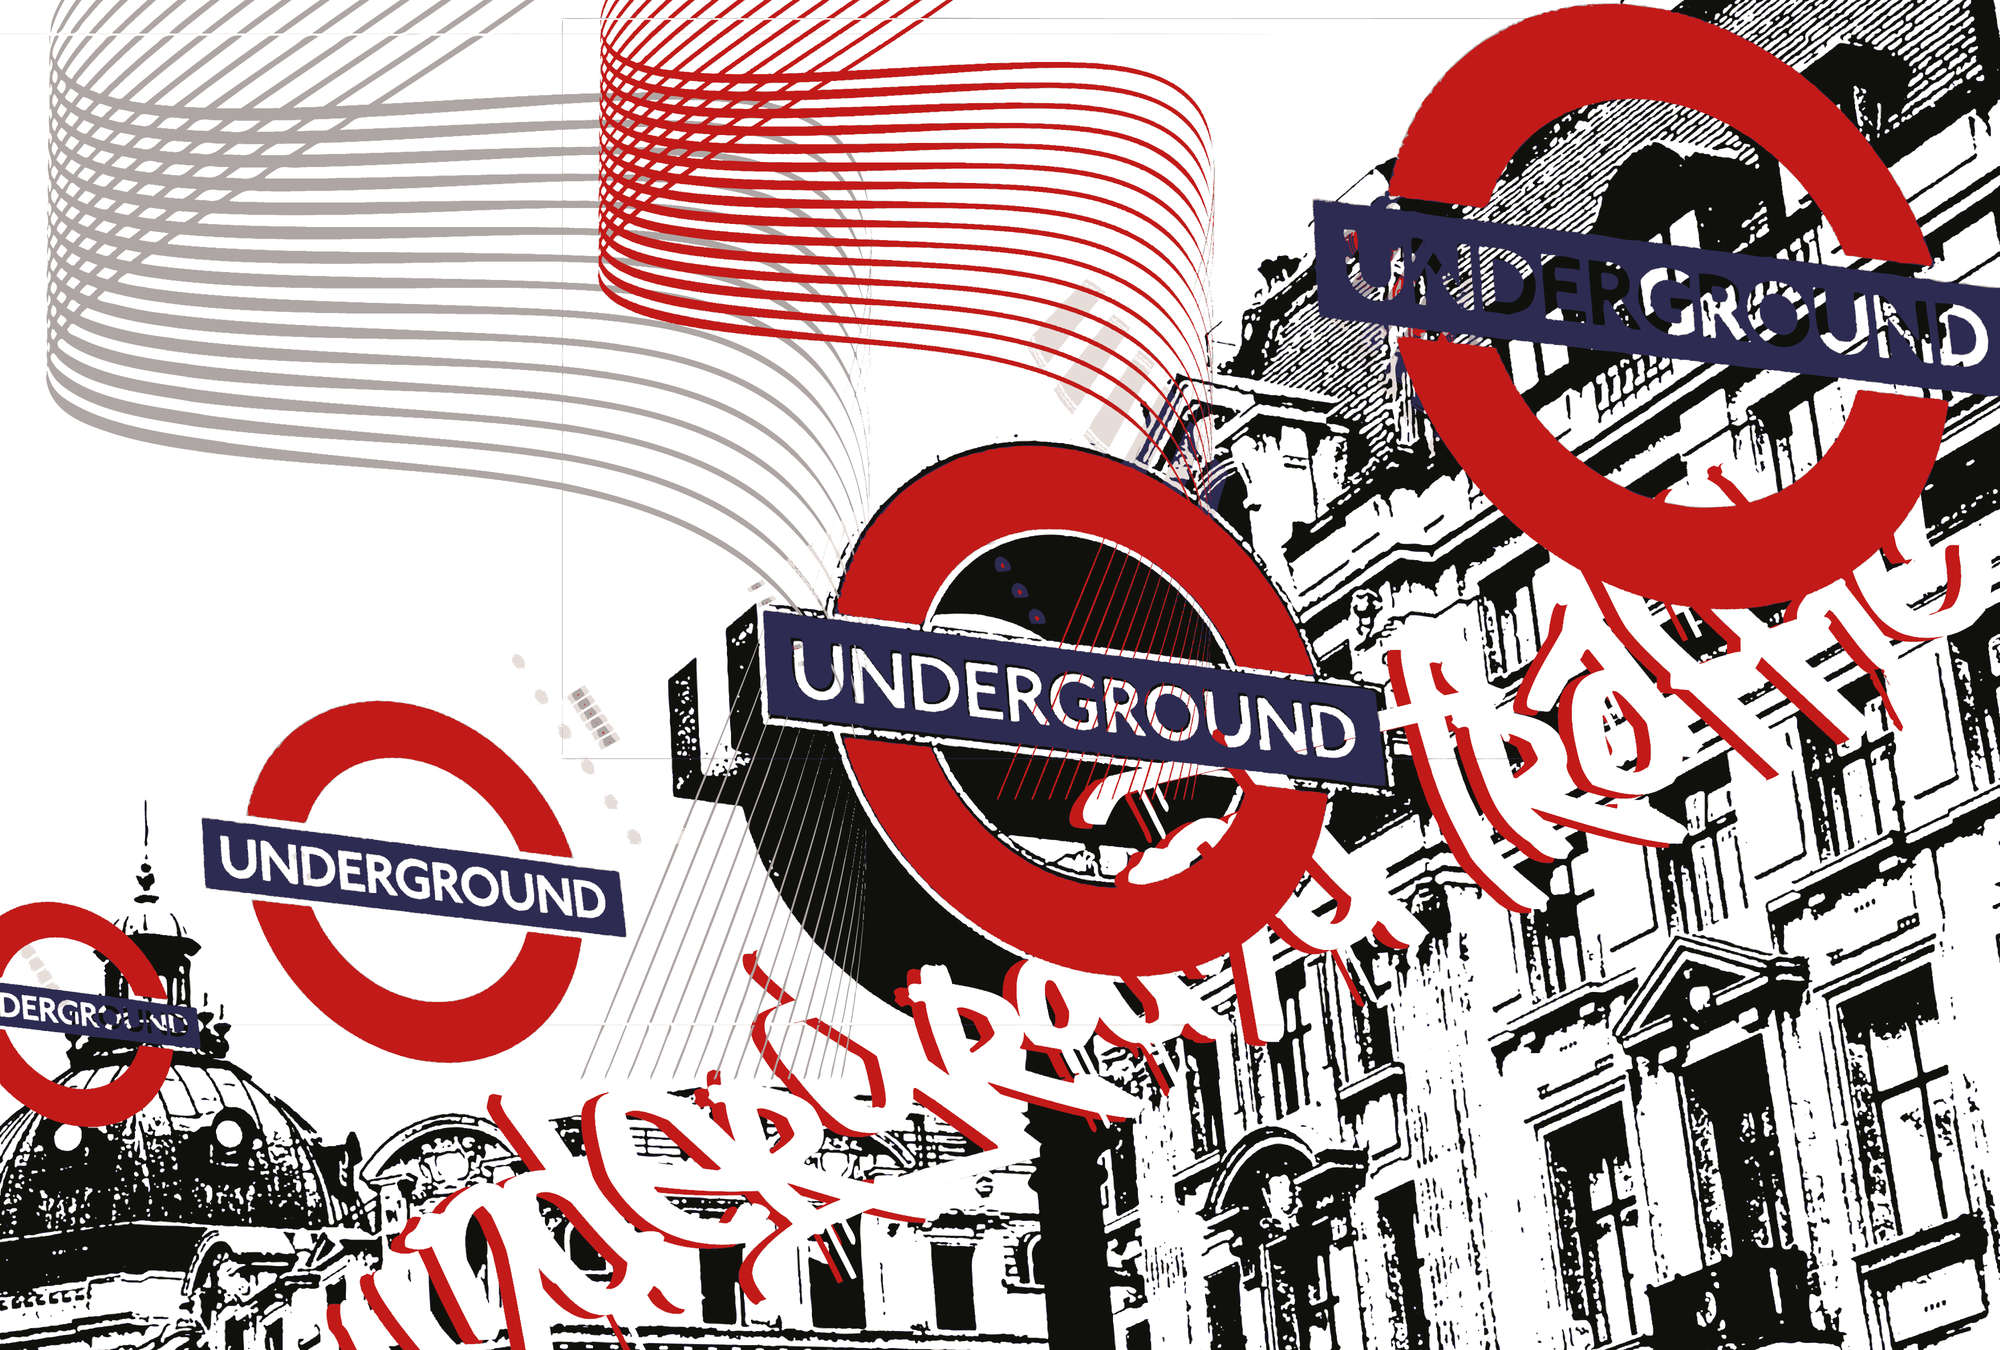             Underground - Muurschildering Londen Stijl, Stedelijk & Modern
        